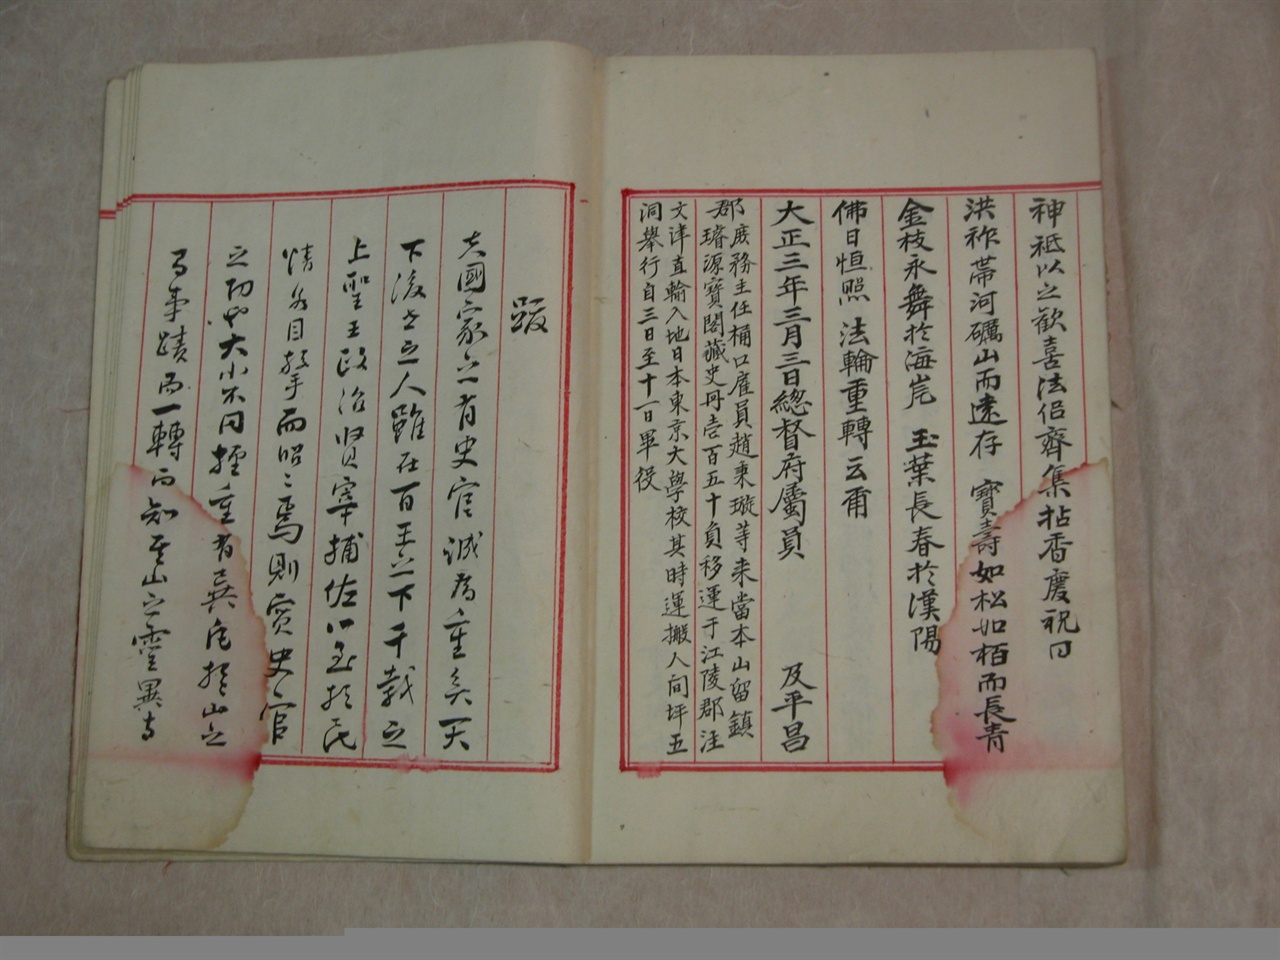 월정사 성보박물관 소장 <오대산 사적>에는 <조선왕조실록>의 일본 반출 경위가 기록돼 있다. 